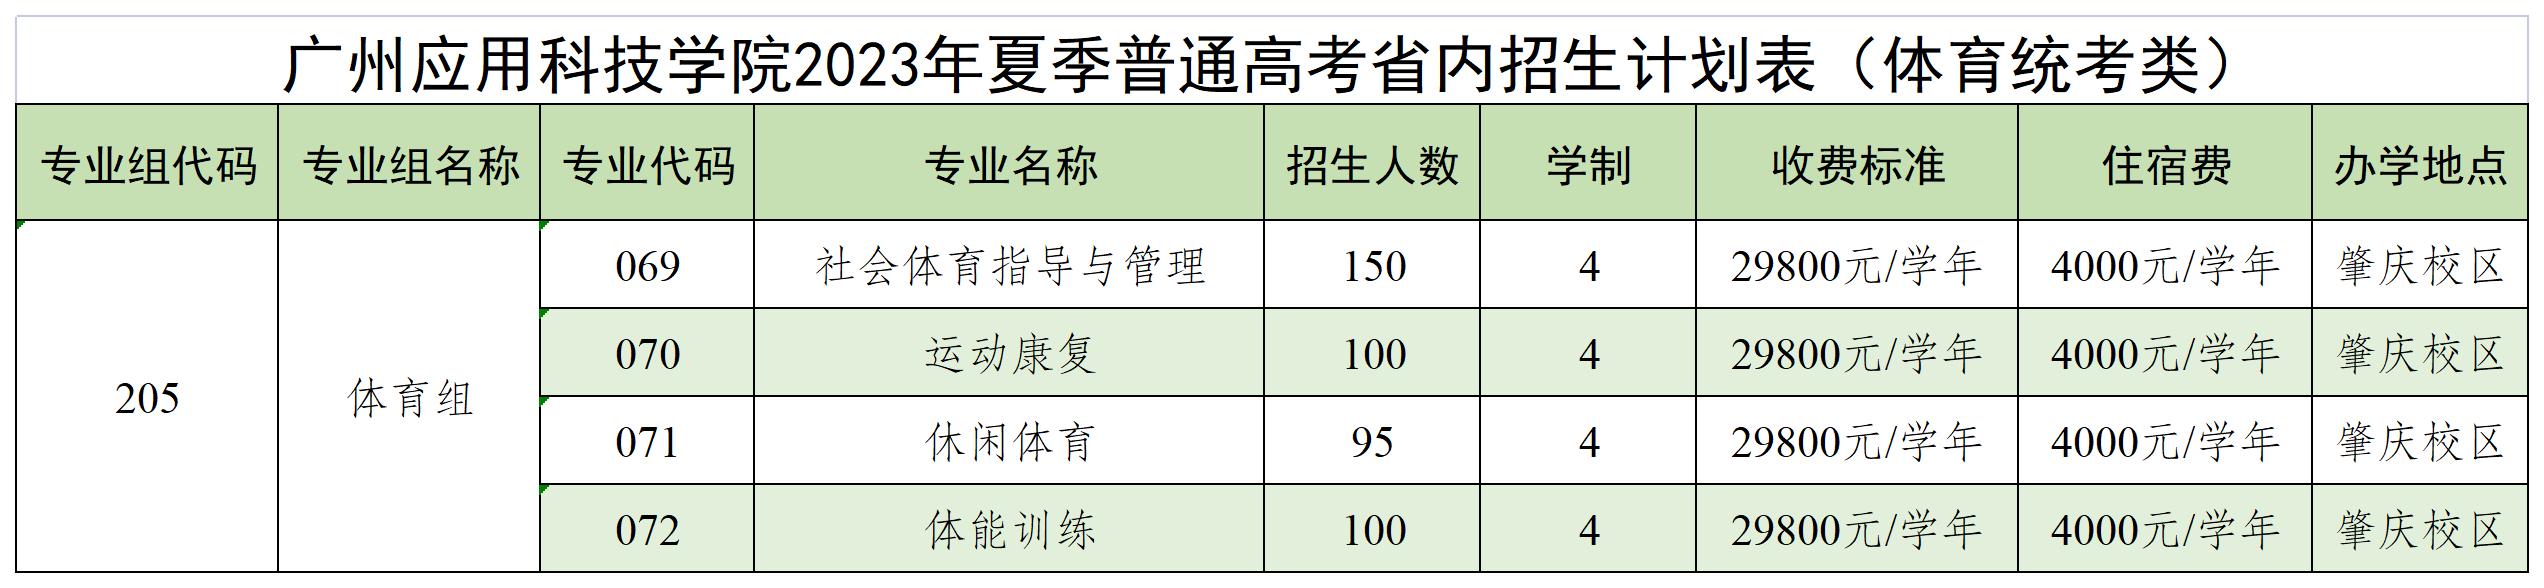 广州应用科技学院2023年夏季普通高考省内招生计划表(体育统考类)